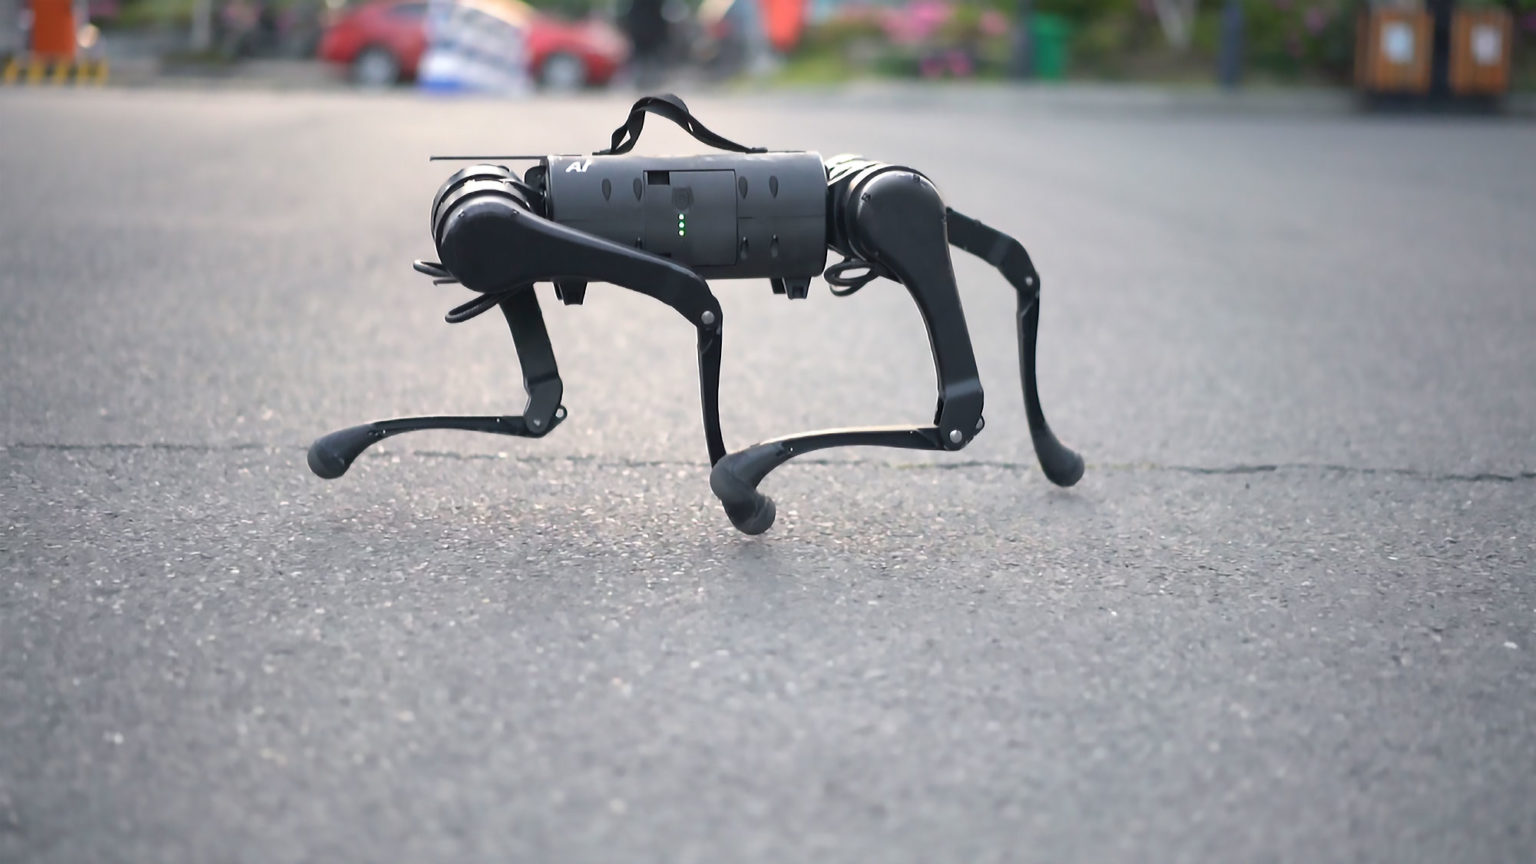 ロボットベンチャーであるユニツリー・ロボティクス（Unitree Robotics）が研究・生産・発売した、四本足歩行ロボット犬「A1」を紹介します。